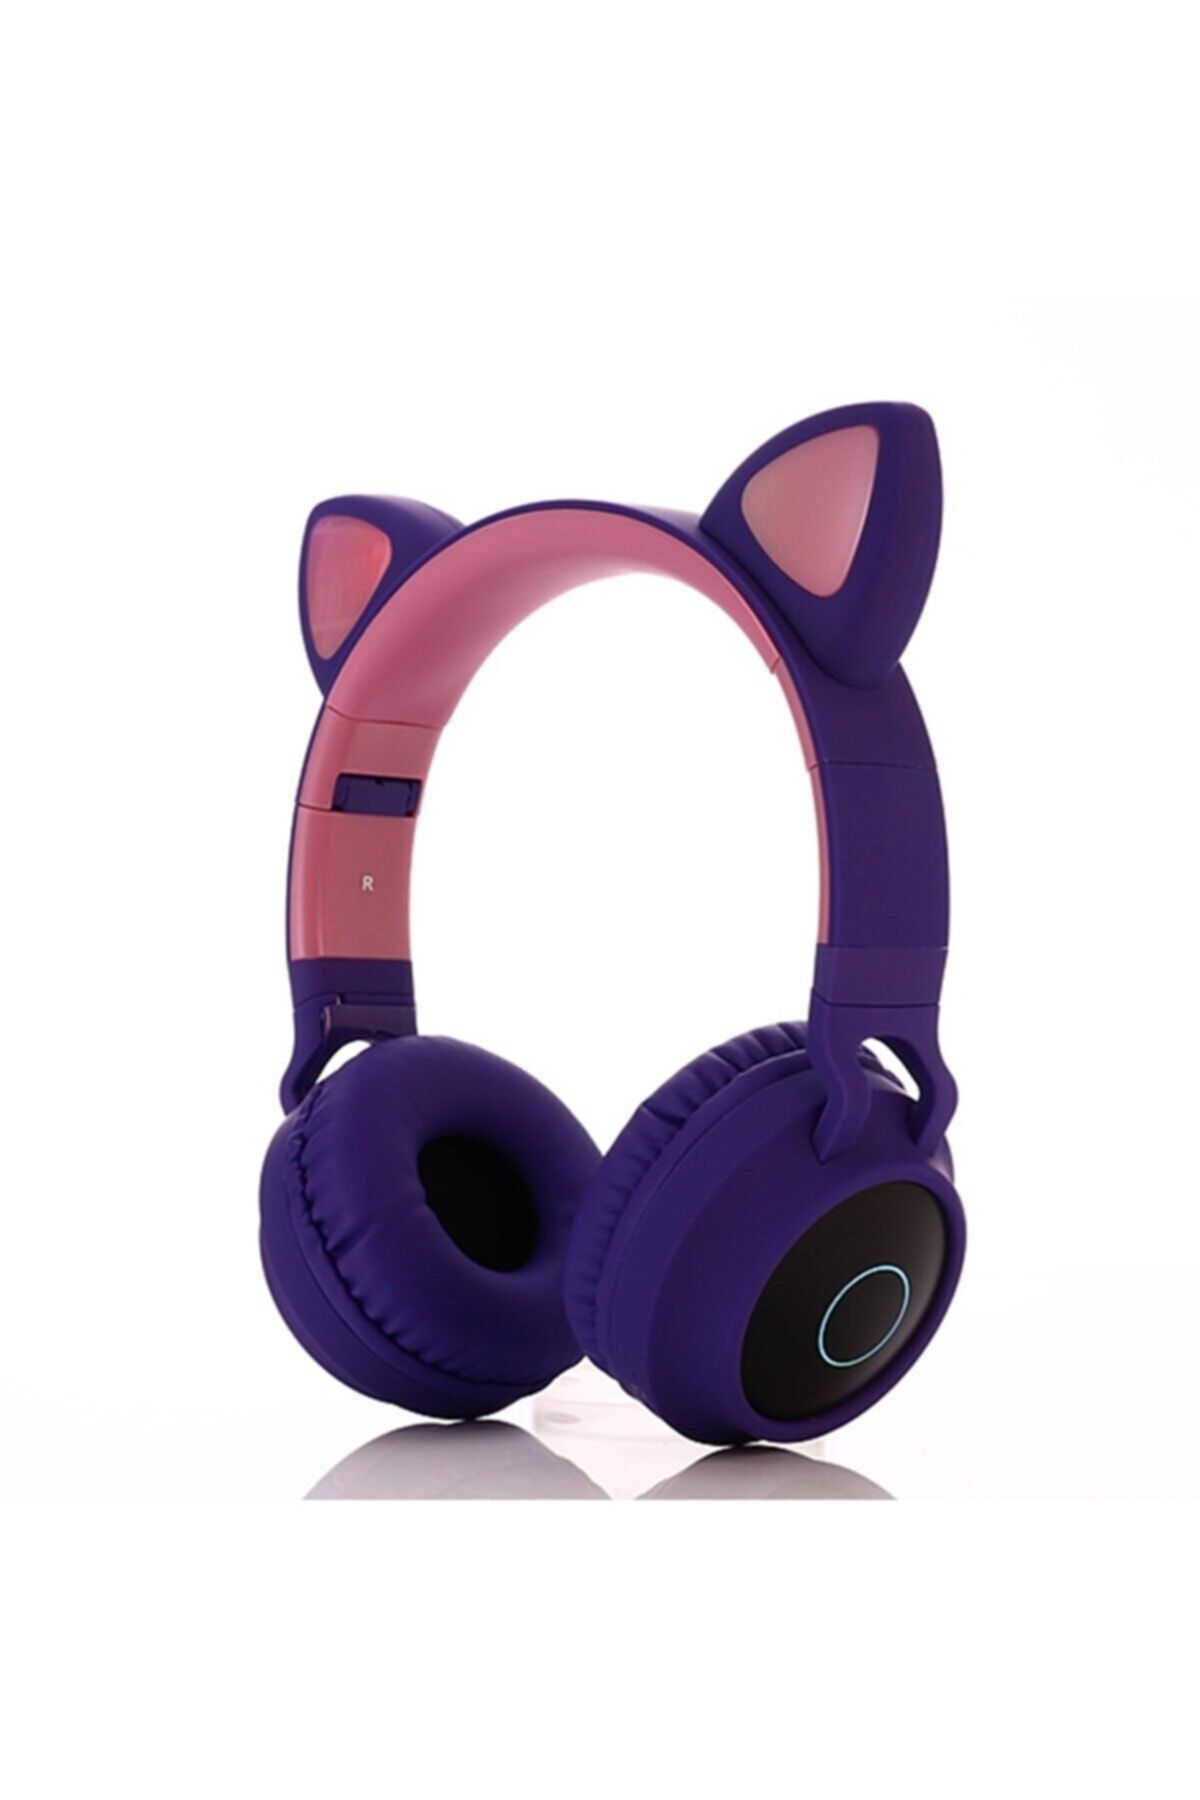 T G Kedi Kulaklı Kulaklık Led Işıklı Mikronlu Hafıza Kartı/Aux Girişli Kablosuz Bluetooth Kedi Kulaklık